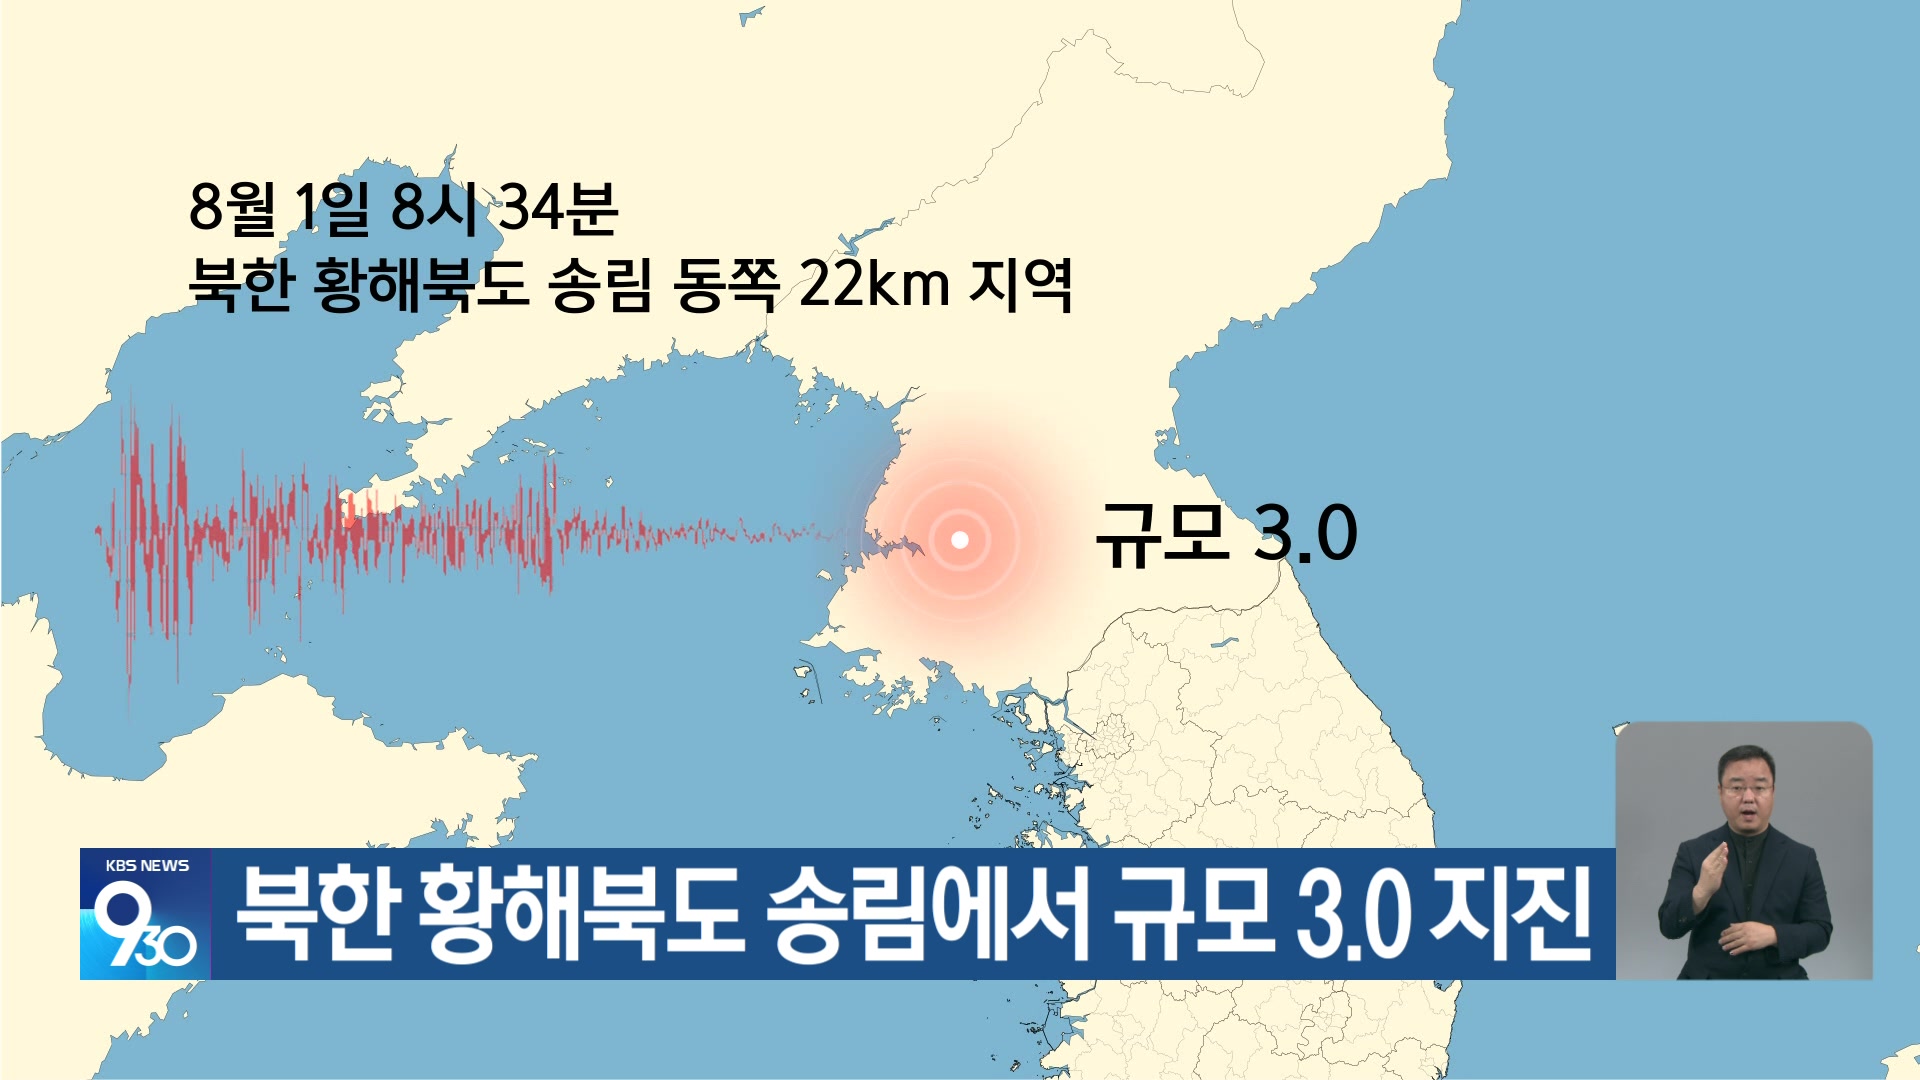 북한 황해북도 송림에서 규모 3.0 지진